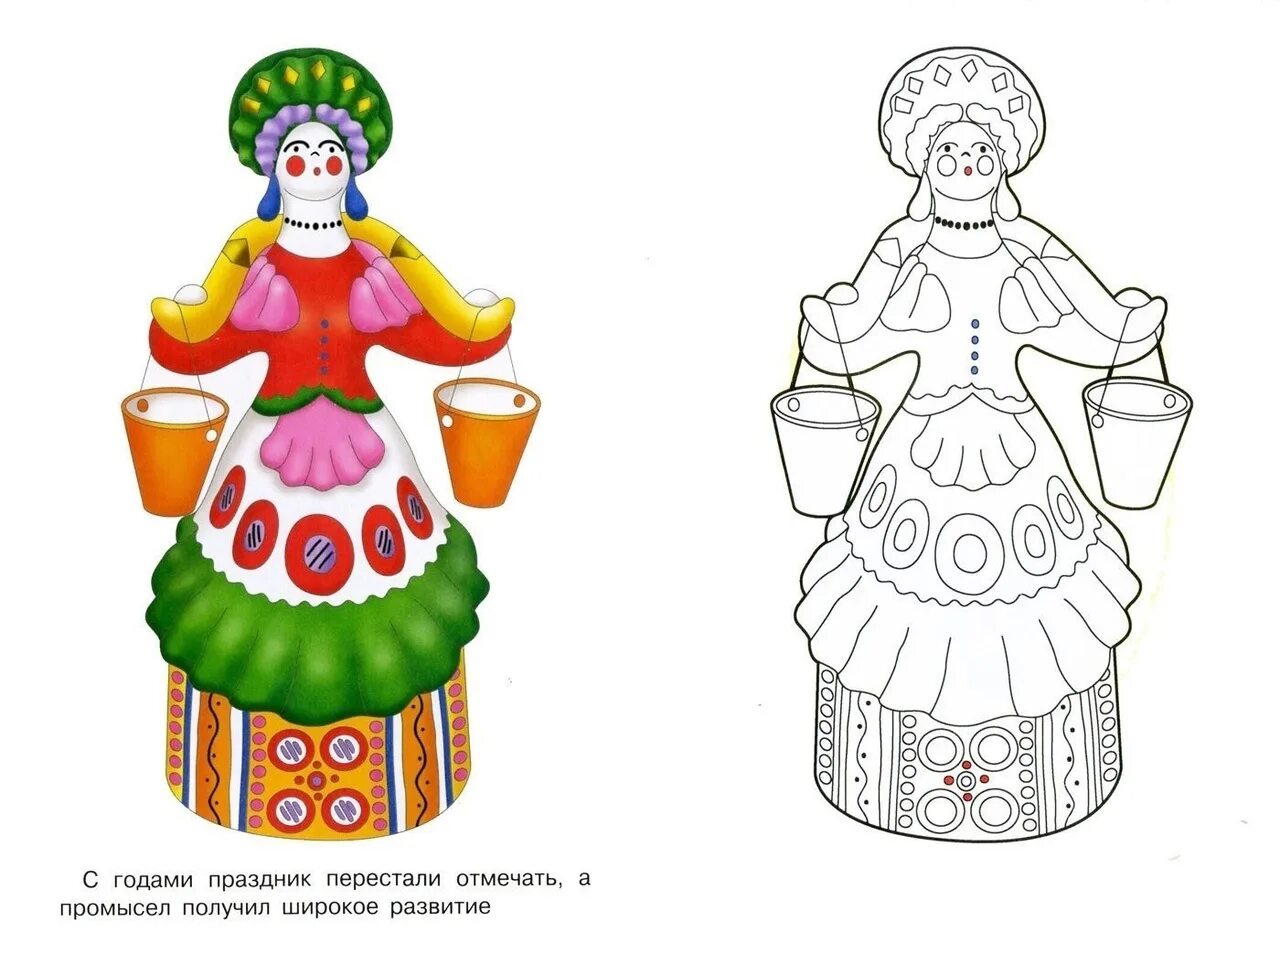 Lady dymkovskaya toy for children templates #2